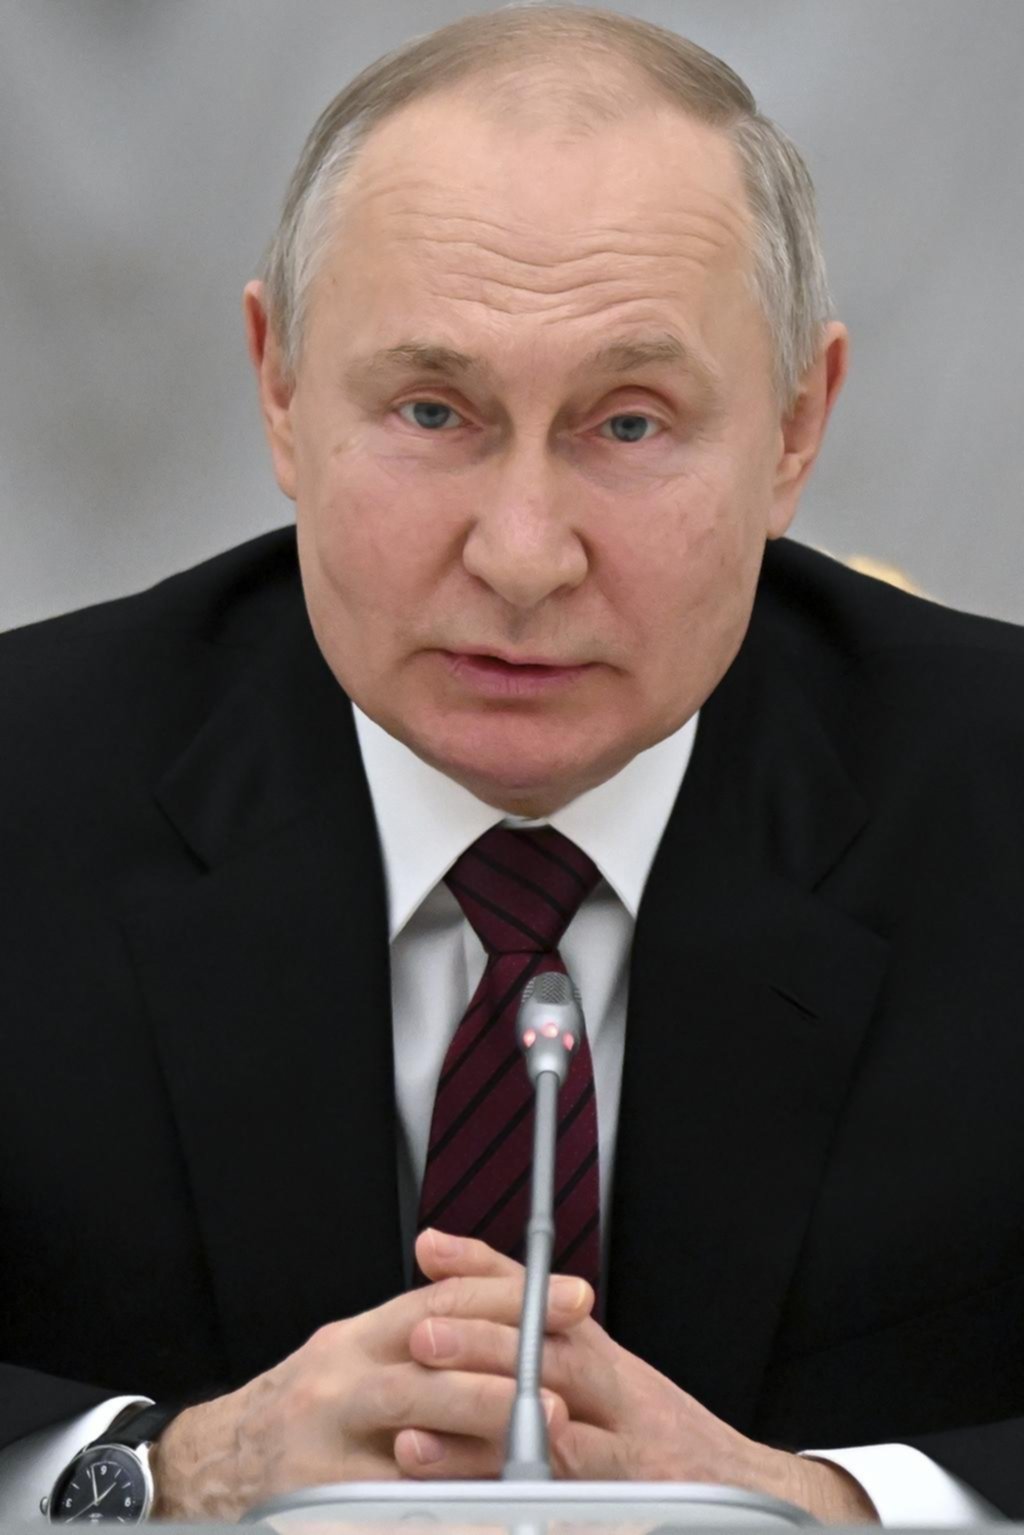 Putin aprobó el misil para bajar un avión en Ucrania en 2014